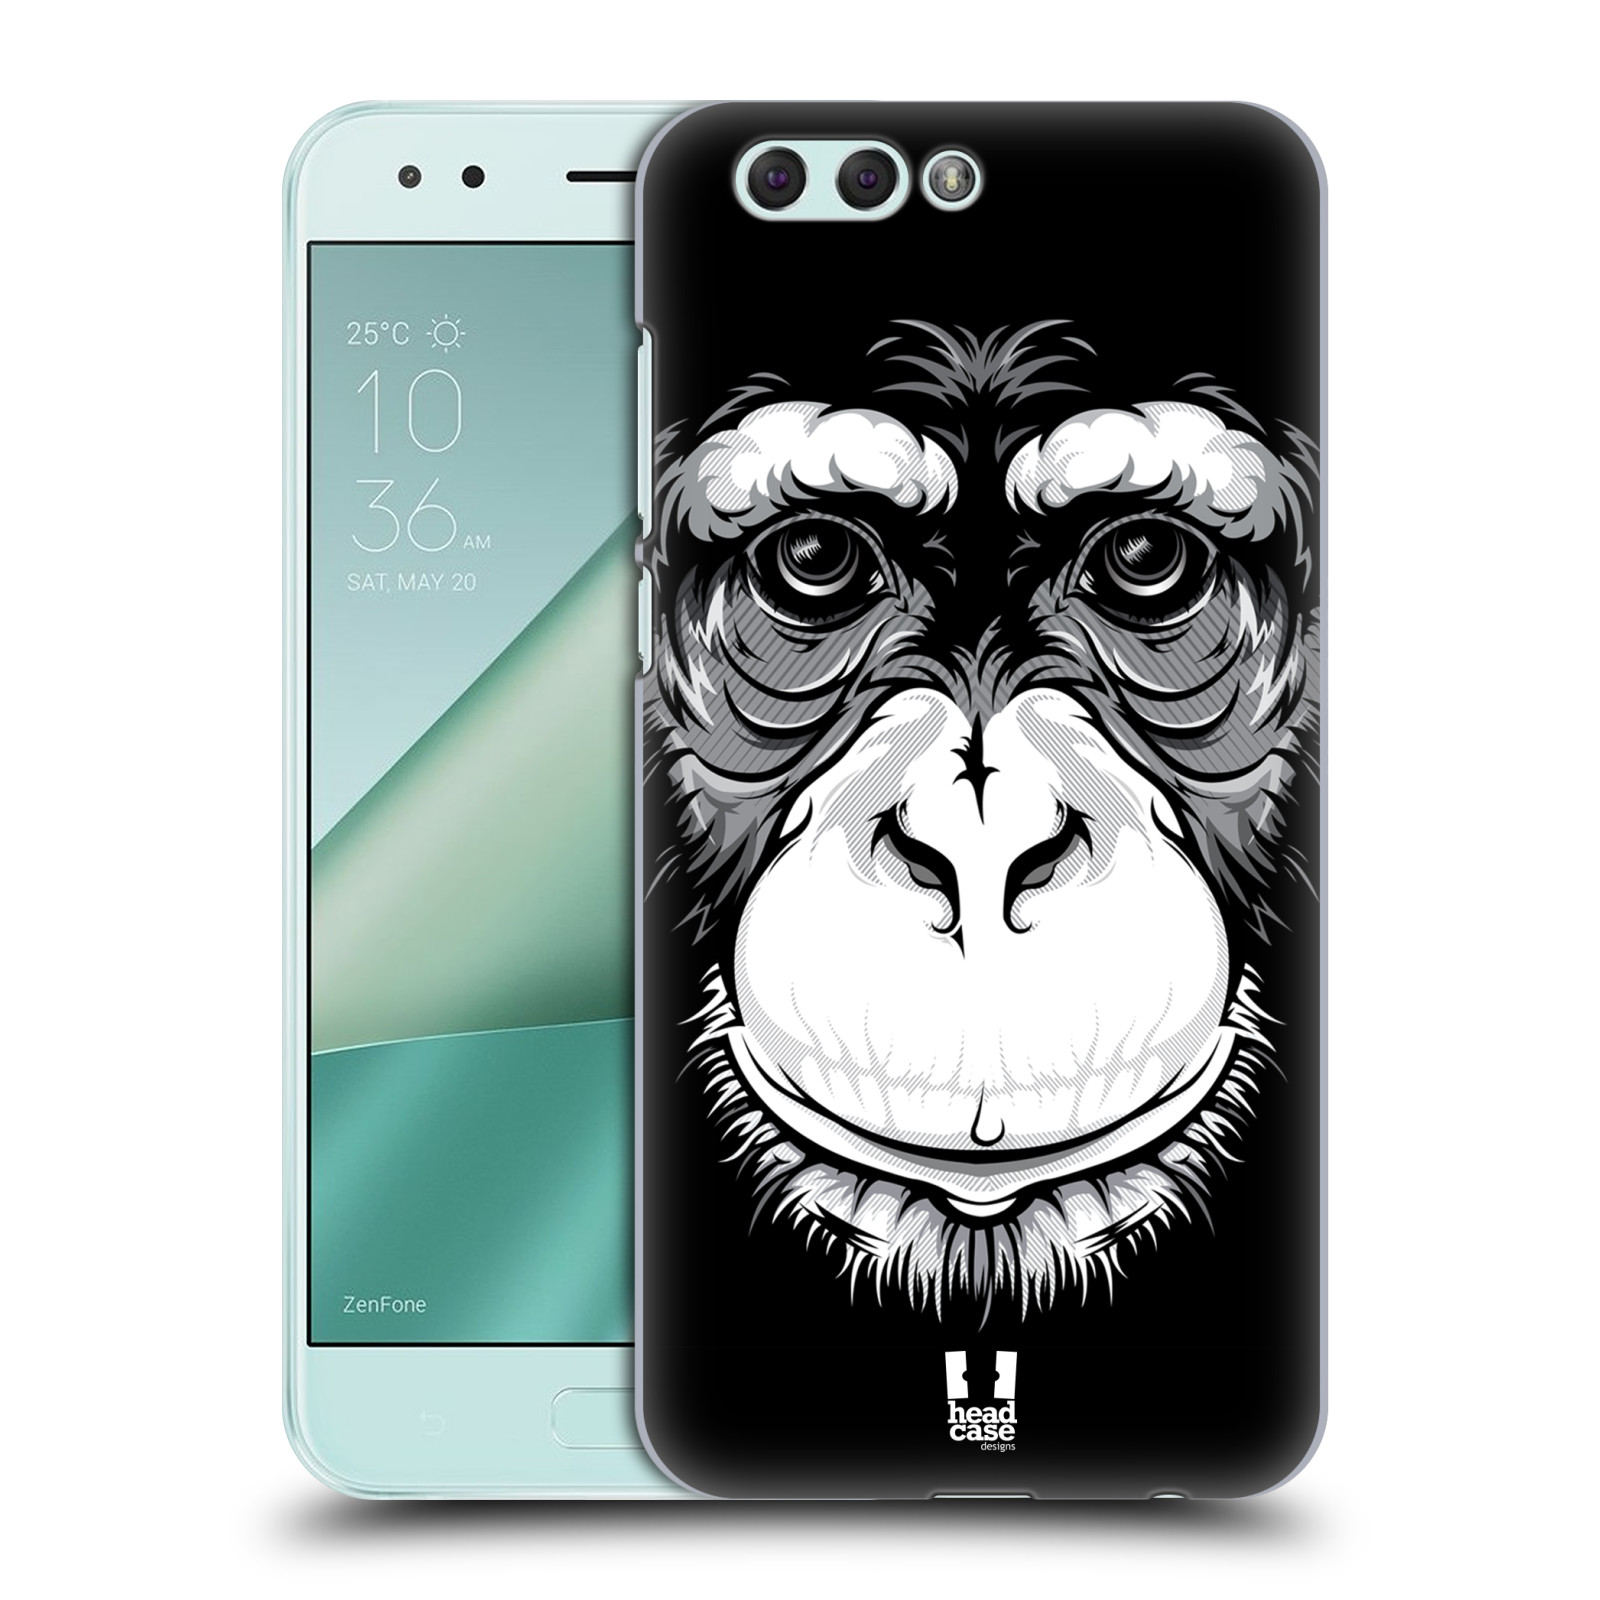 HEAD CASE plastový obal na mobil Asus Zenfone 4 ZE554KL vzor Zvíře kreslená tvář šimpanz